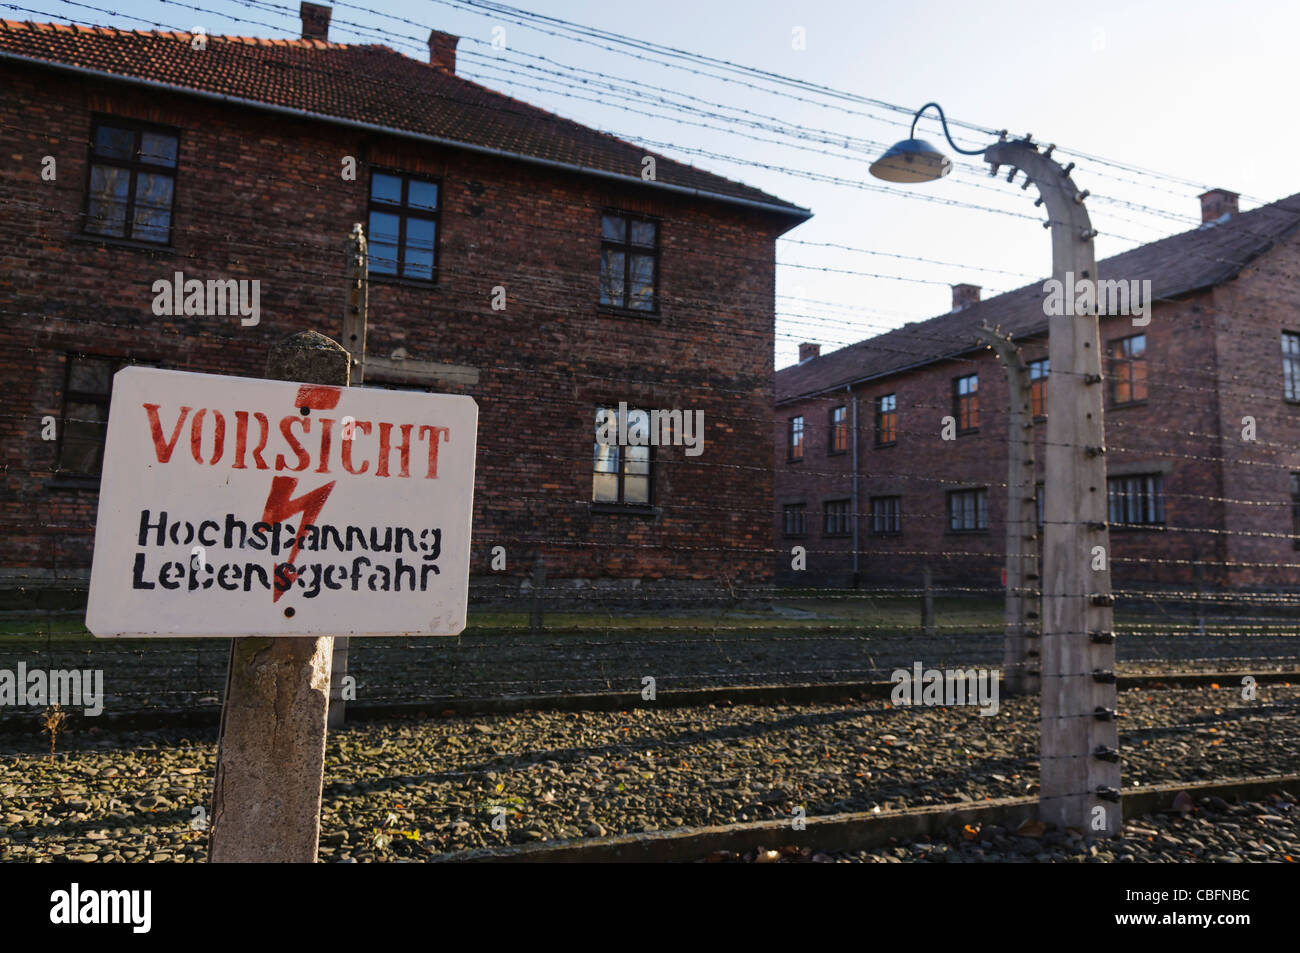 Sign at barbed wire electric fence in Auschwitz 'Vorsicht: hochspannung Lebensgefahr' (Danger: High voltage) Stock Photo